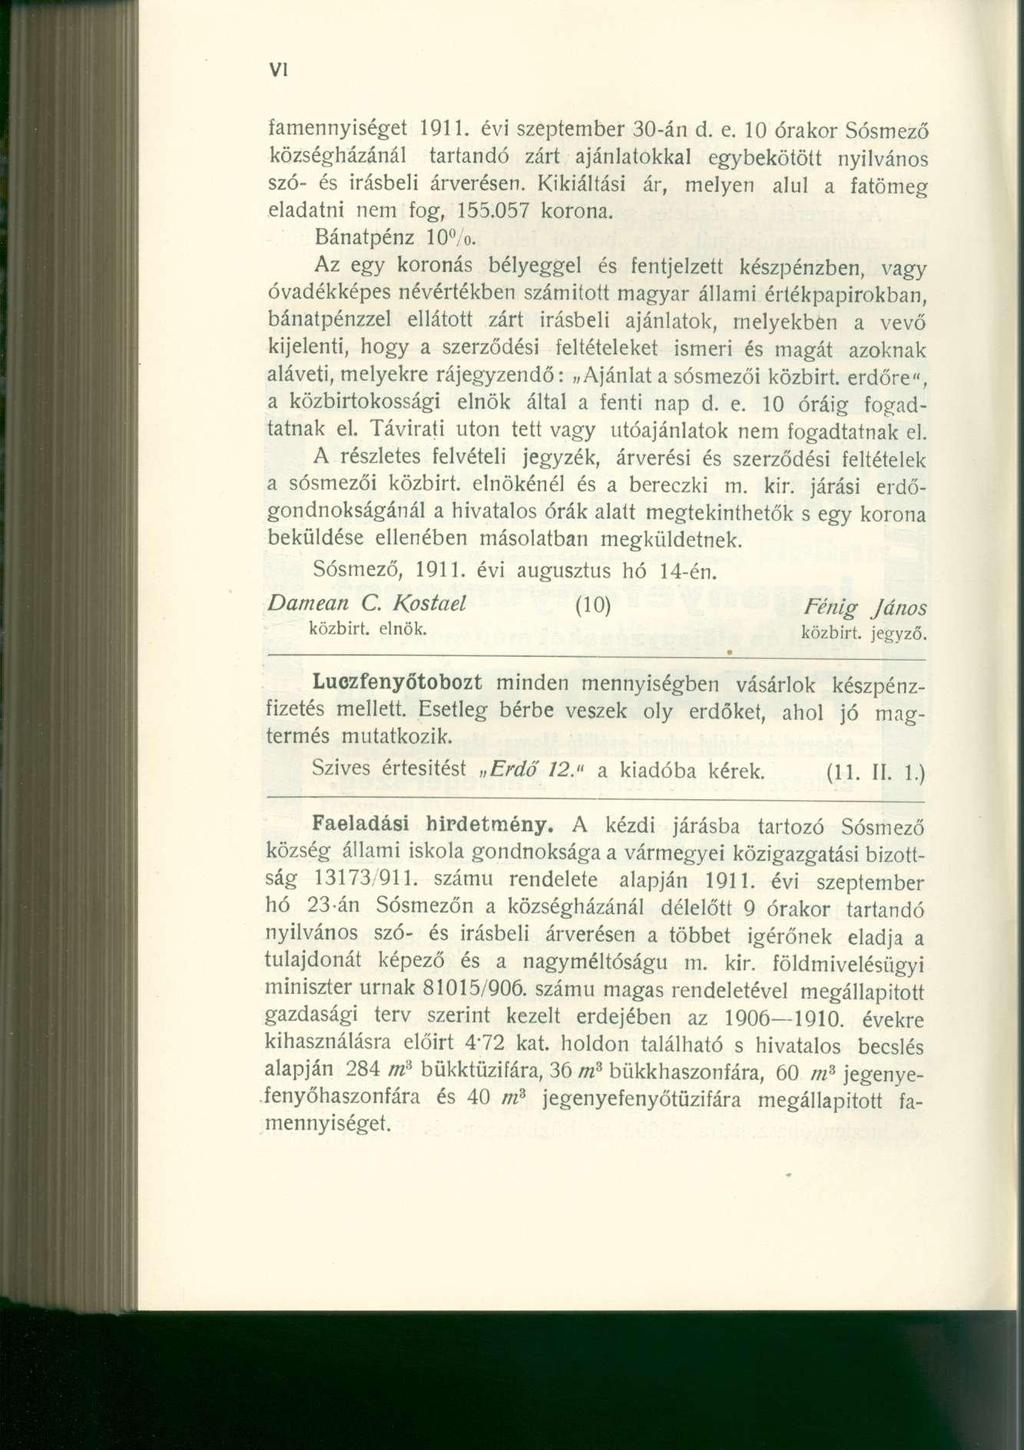 famennyiséget 1911. évi szeptember 30-án d. e. 10 órakor Sósmező községházánál tartandó zárt ajánlatokkal egybekötött nyilvános szó- és Írásbeli árverésen.